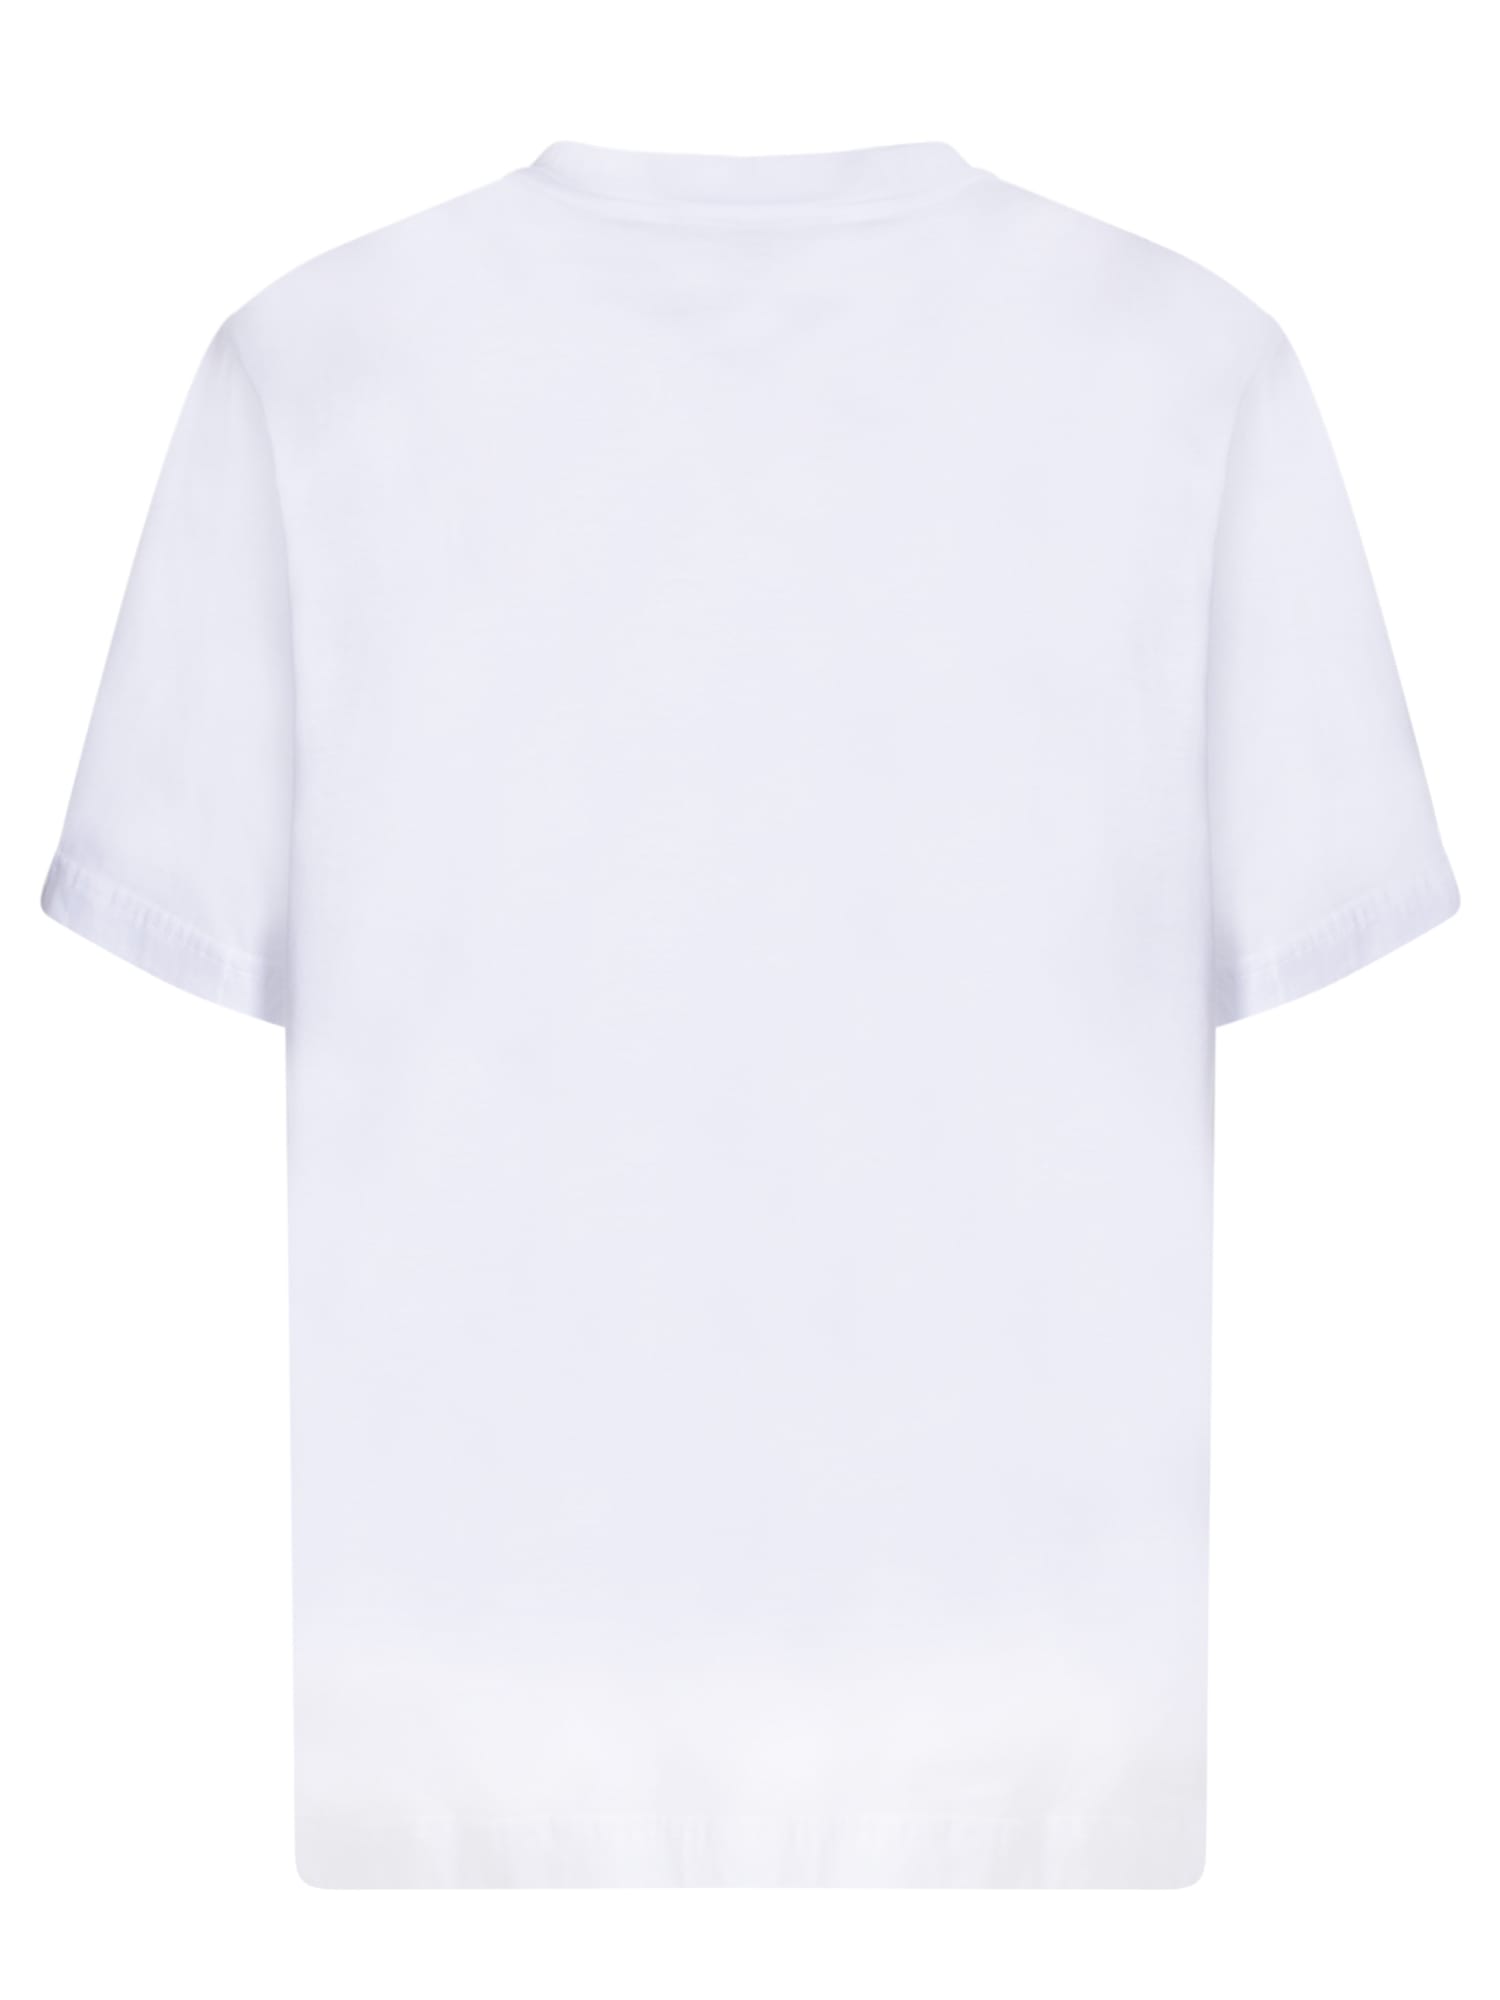 Shop Dolce & Gabbana White Sicilians Are Sensational T-shirt